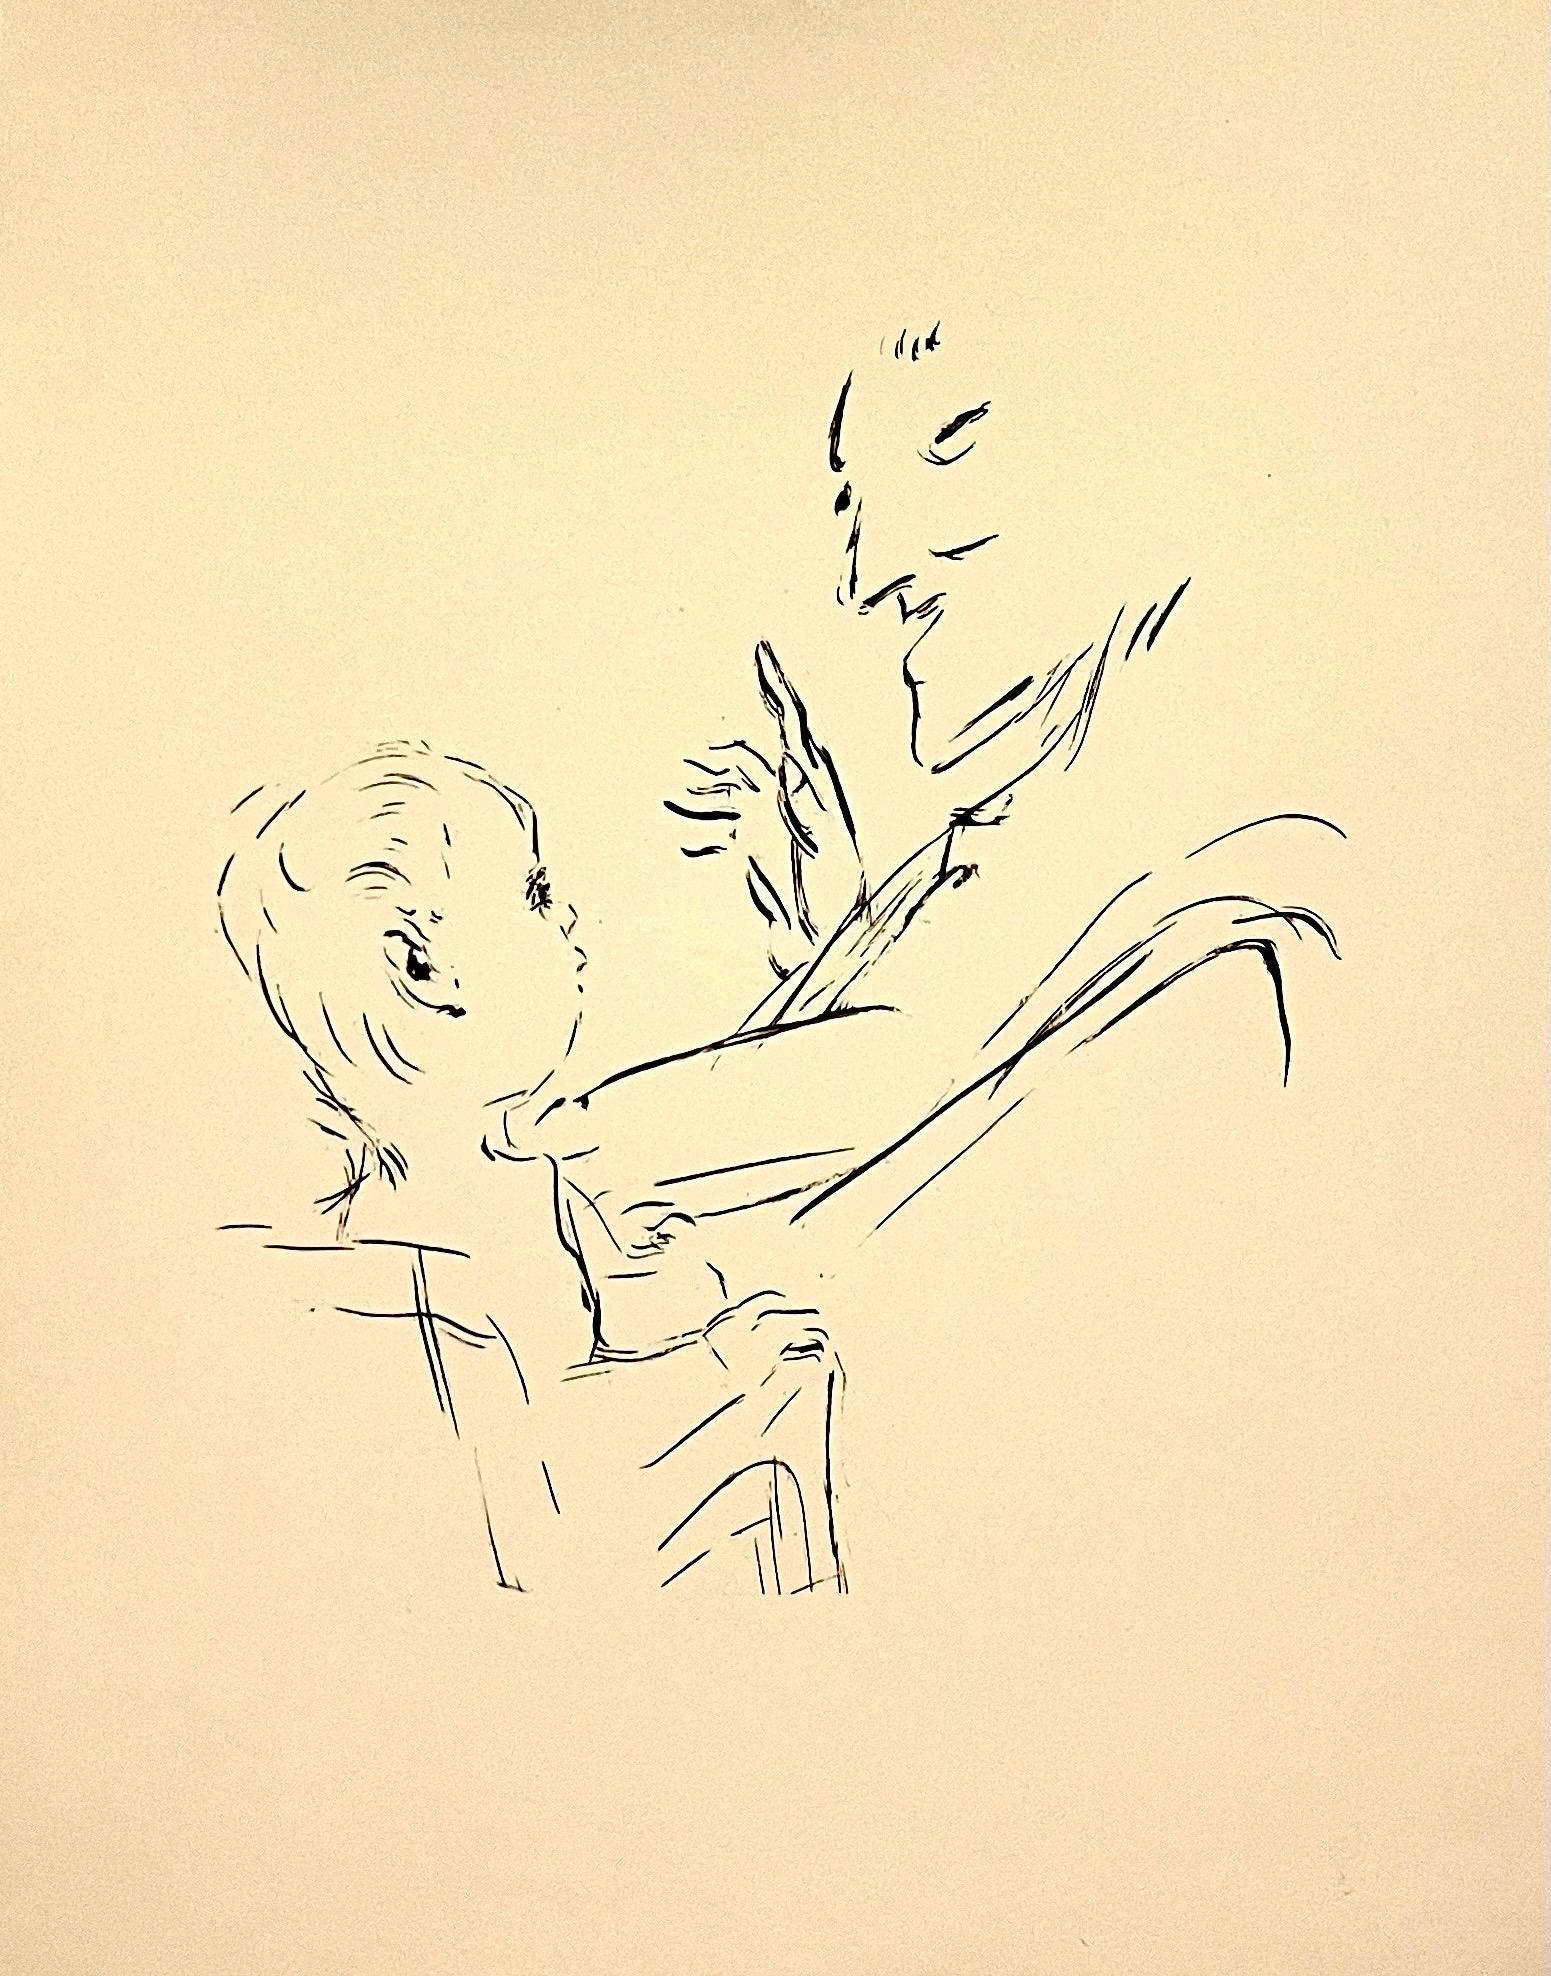 
Dies ist von einem  limitierte Auflage Portfolio von Original-Lithographien drucken Fernand Mourlot in Paris im Jahr 1958 von Arbeiten in Zusammenarbeit mit Bonnard, die im Jahr 1928 begann getan. 
Es handelt sich um die seltene Erstausgabe, Nr.